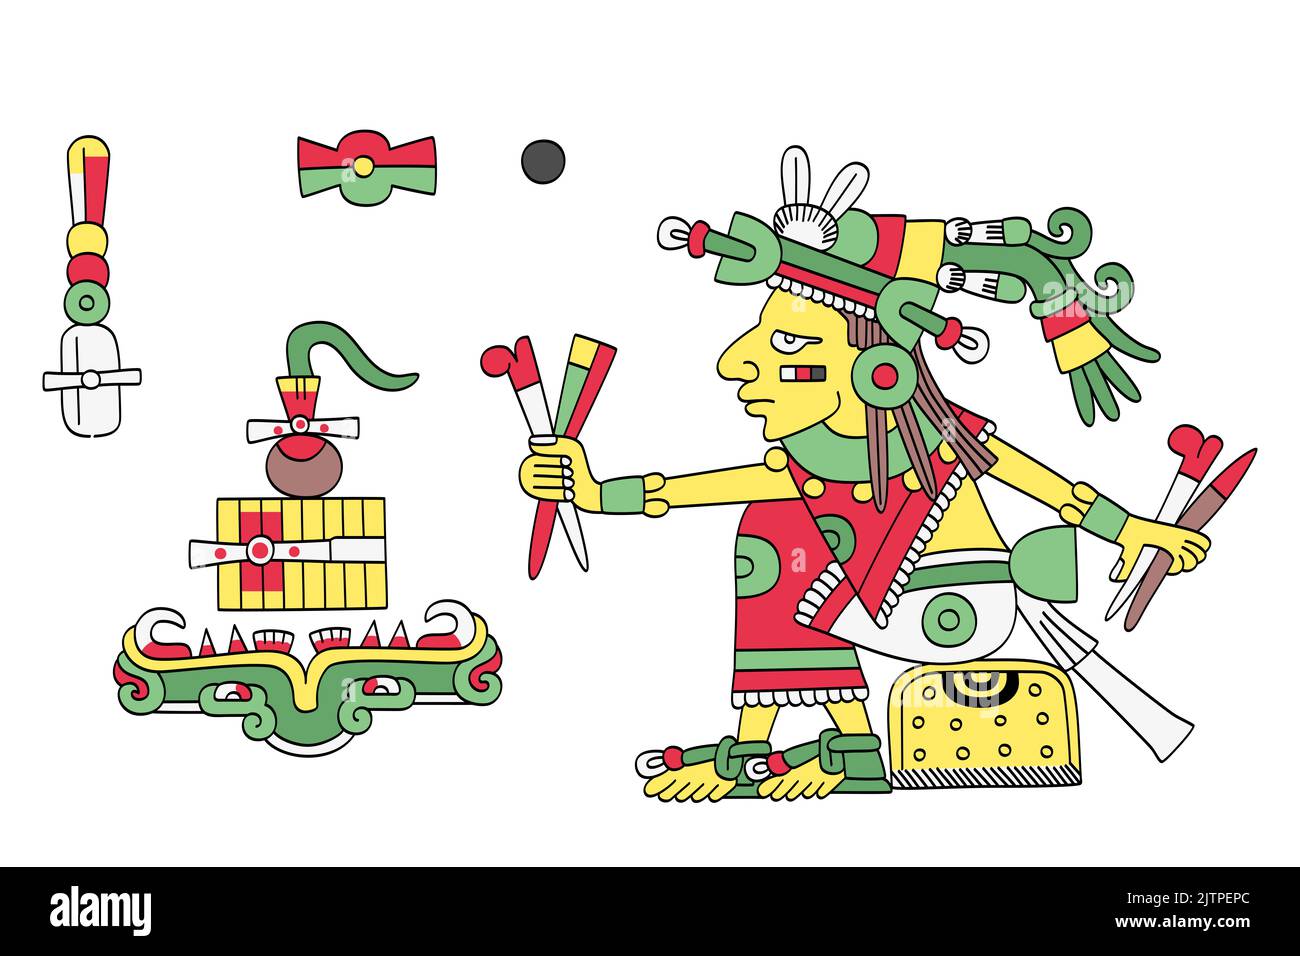 Cinteotl, aztekengott des Mais, vor dem Totenreich. Maisgottheit in der aztekischen Mythologie, auch bekannt als Centeotl und Centeocihuatl. Stockfoto